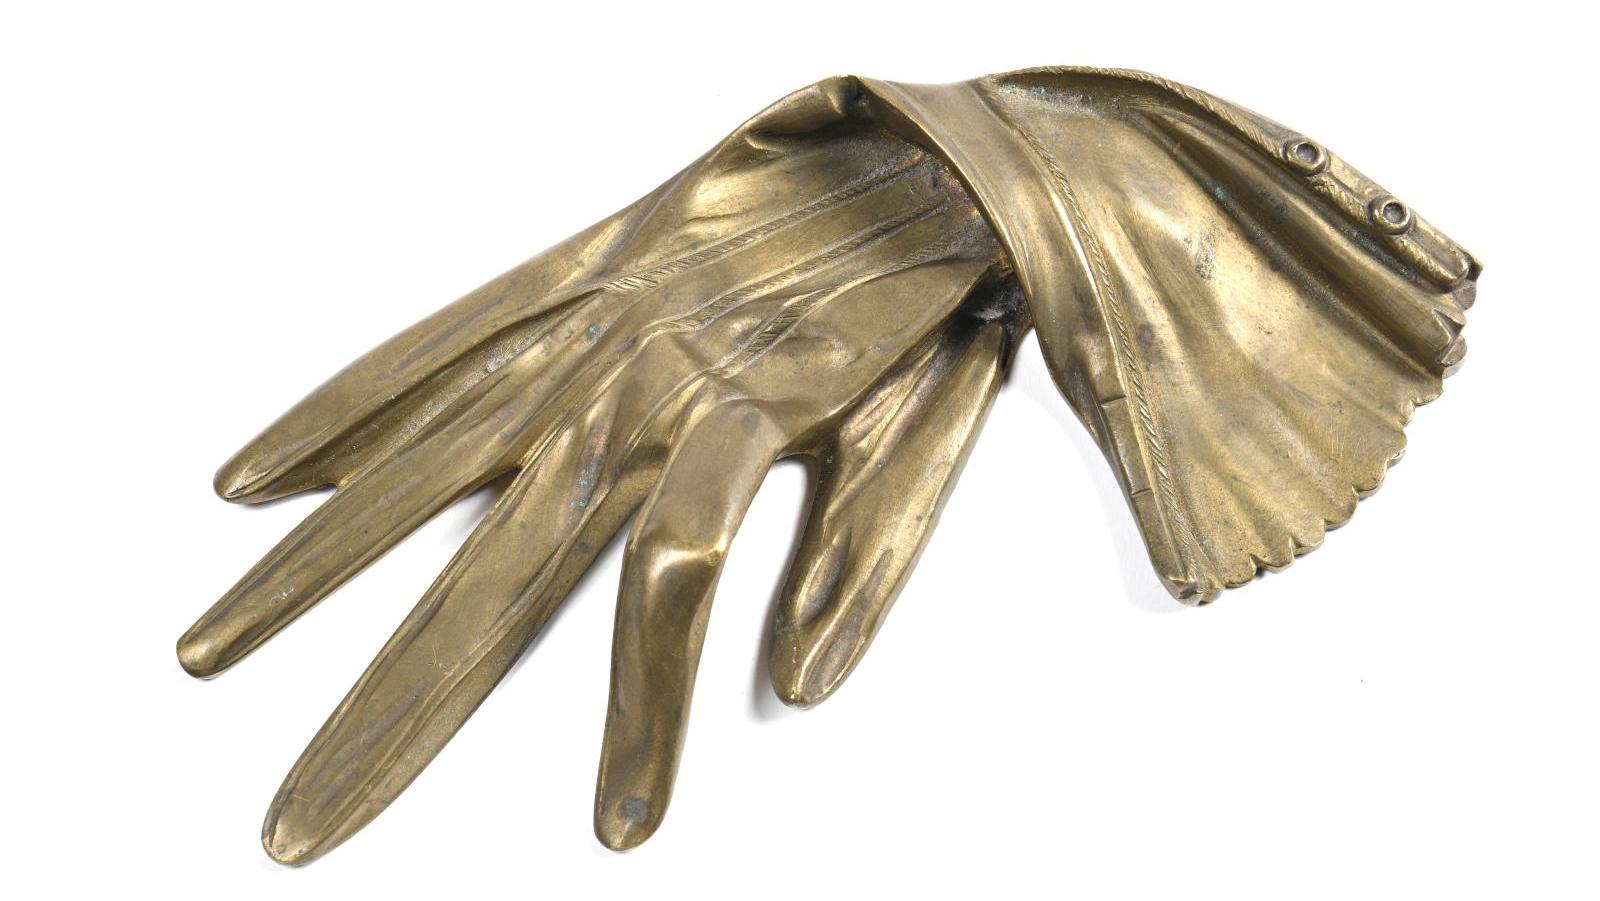 Gant de femme, sculpture en bronze à patine brune, moulé vers 1900, 10 × 20 cm, 490... Le gant de bronze de Nadja